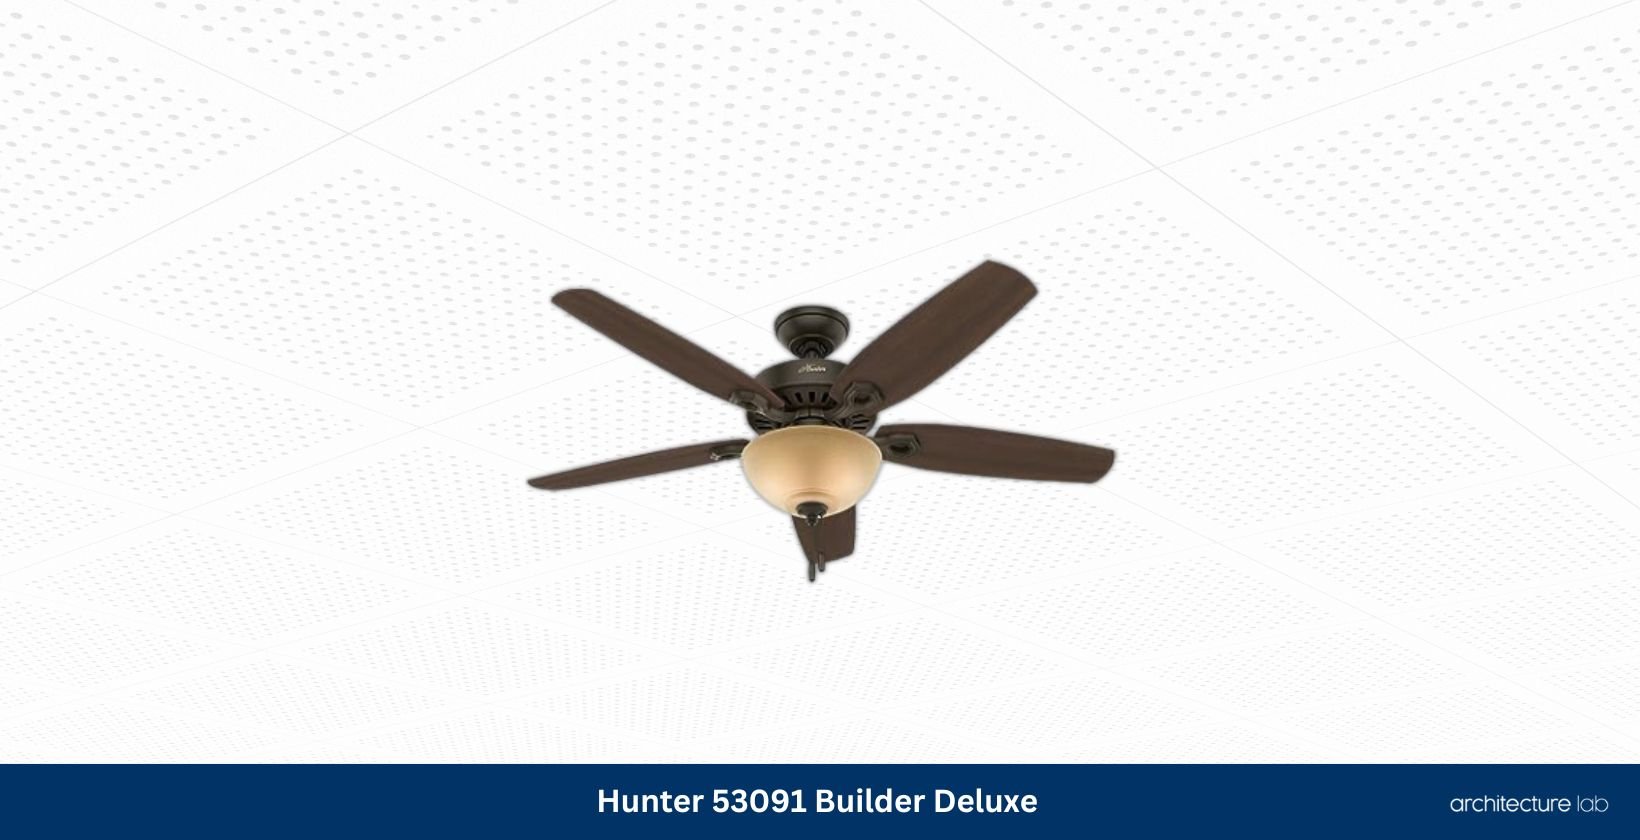 Hunter fan company 53091 builder deluxe indoor ceiling fan